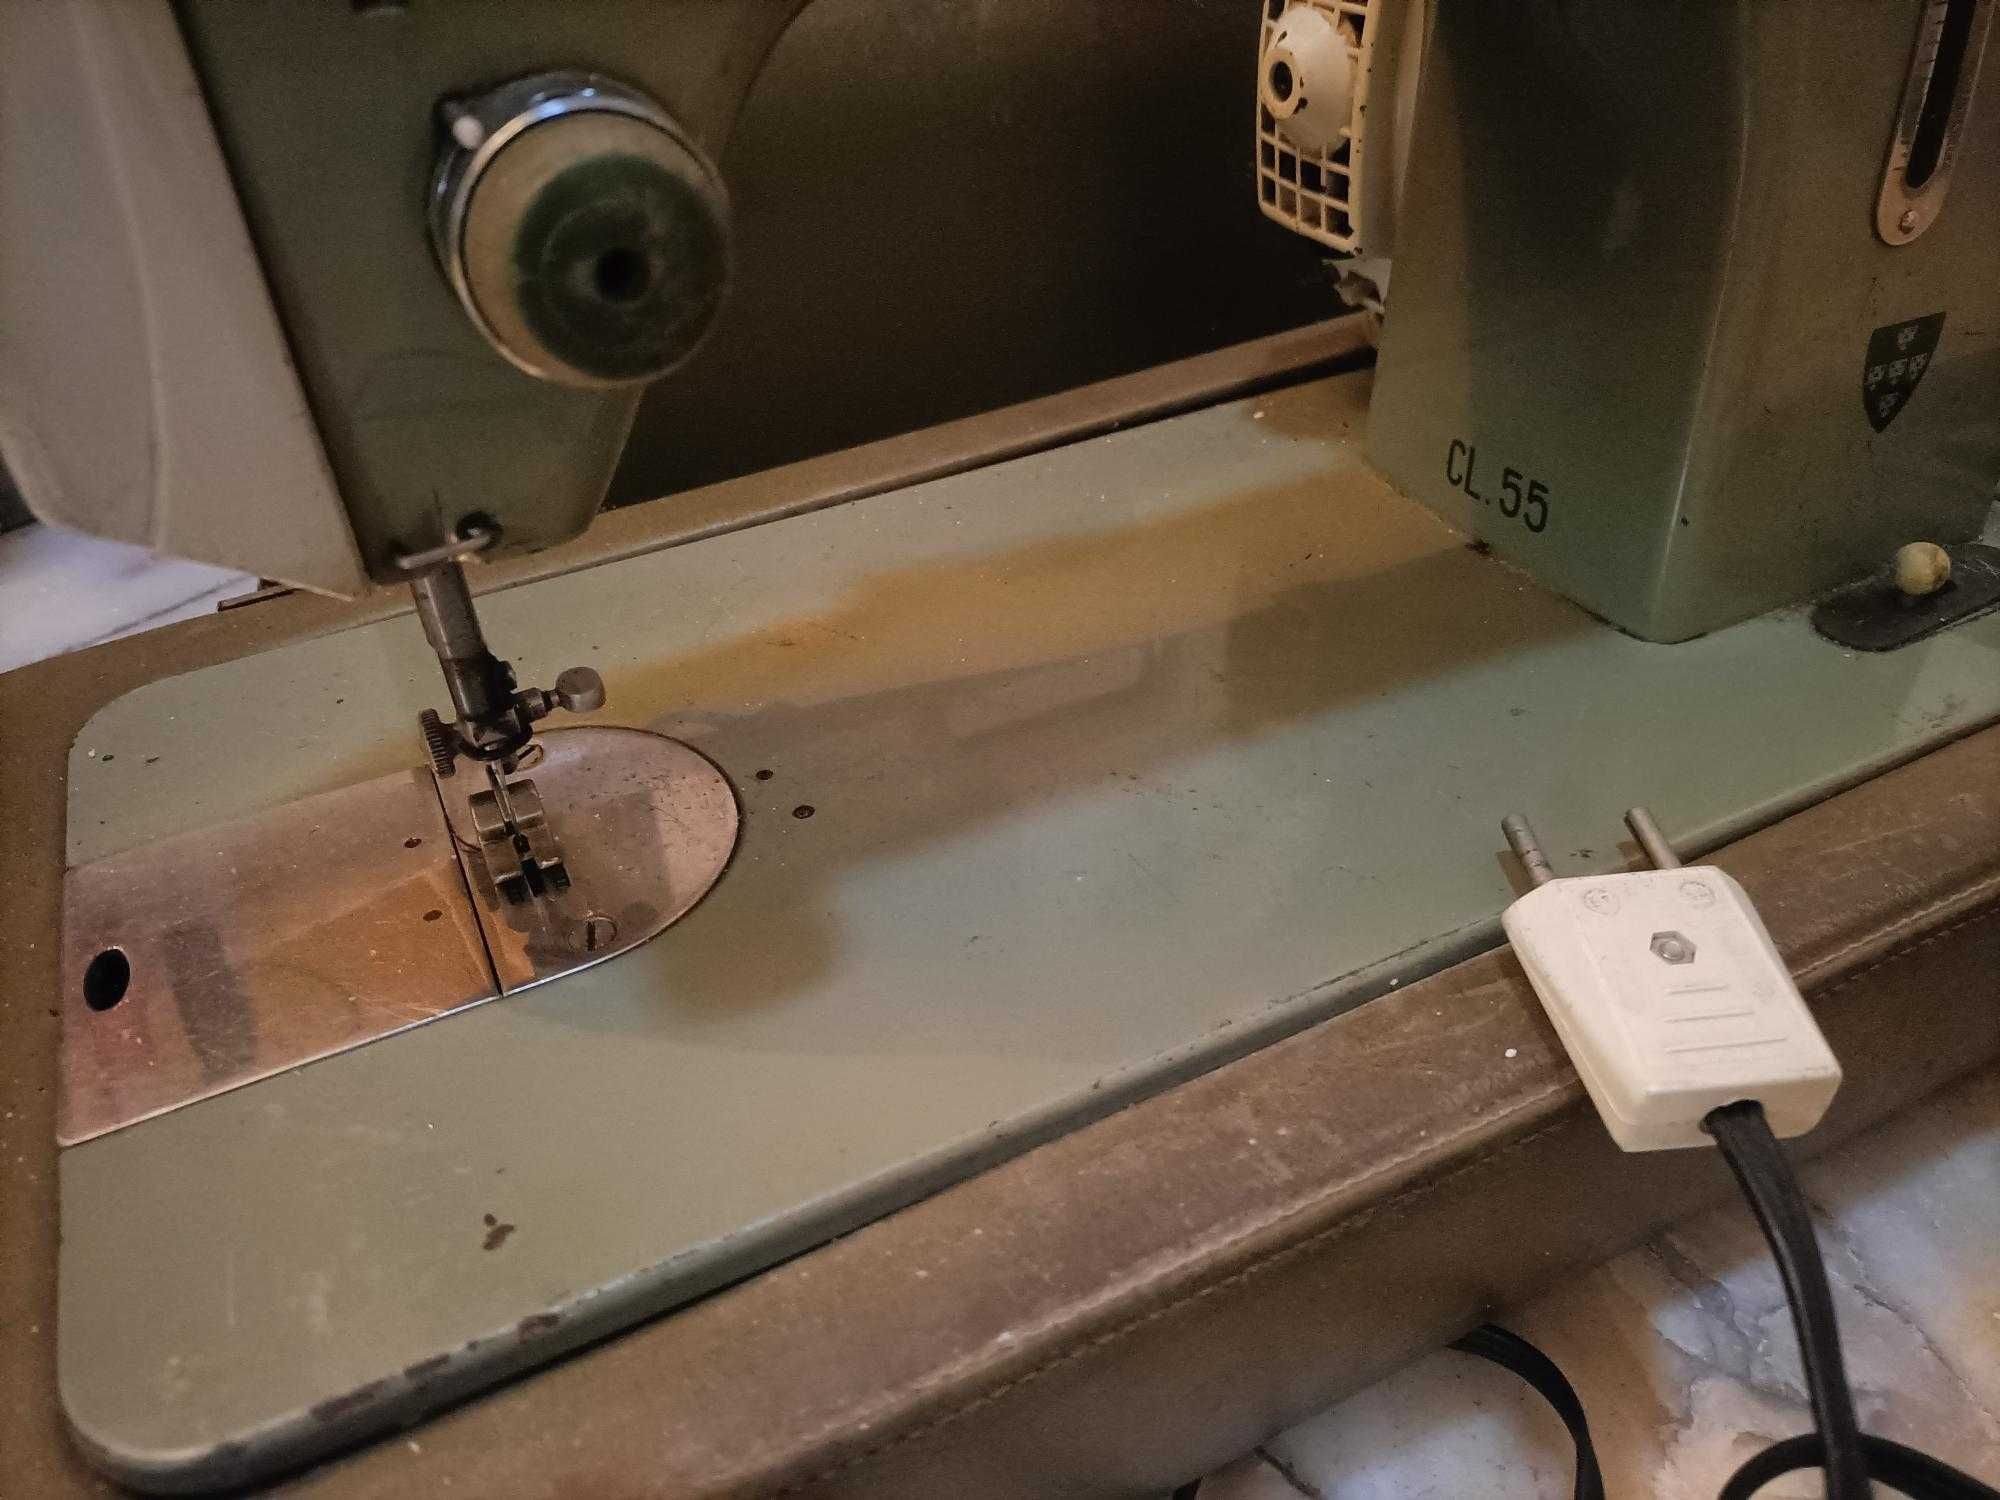 Máquina de costura antiga Oliva